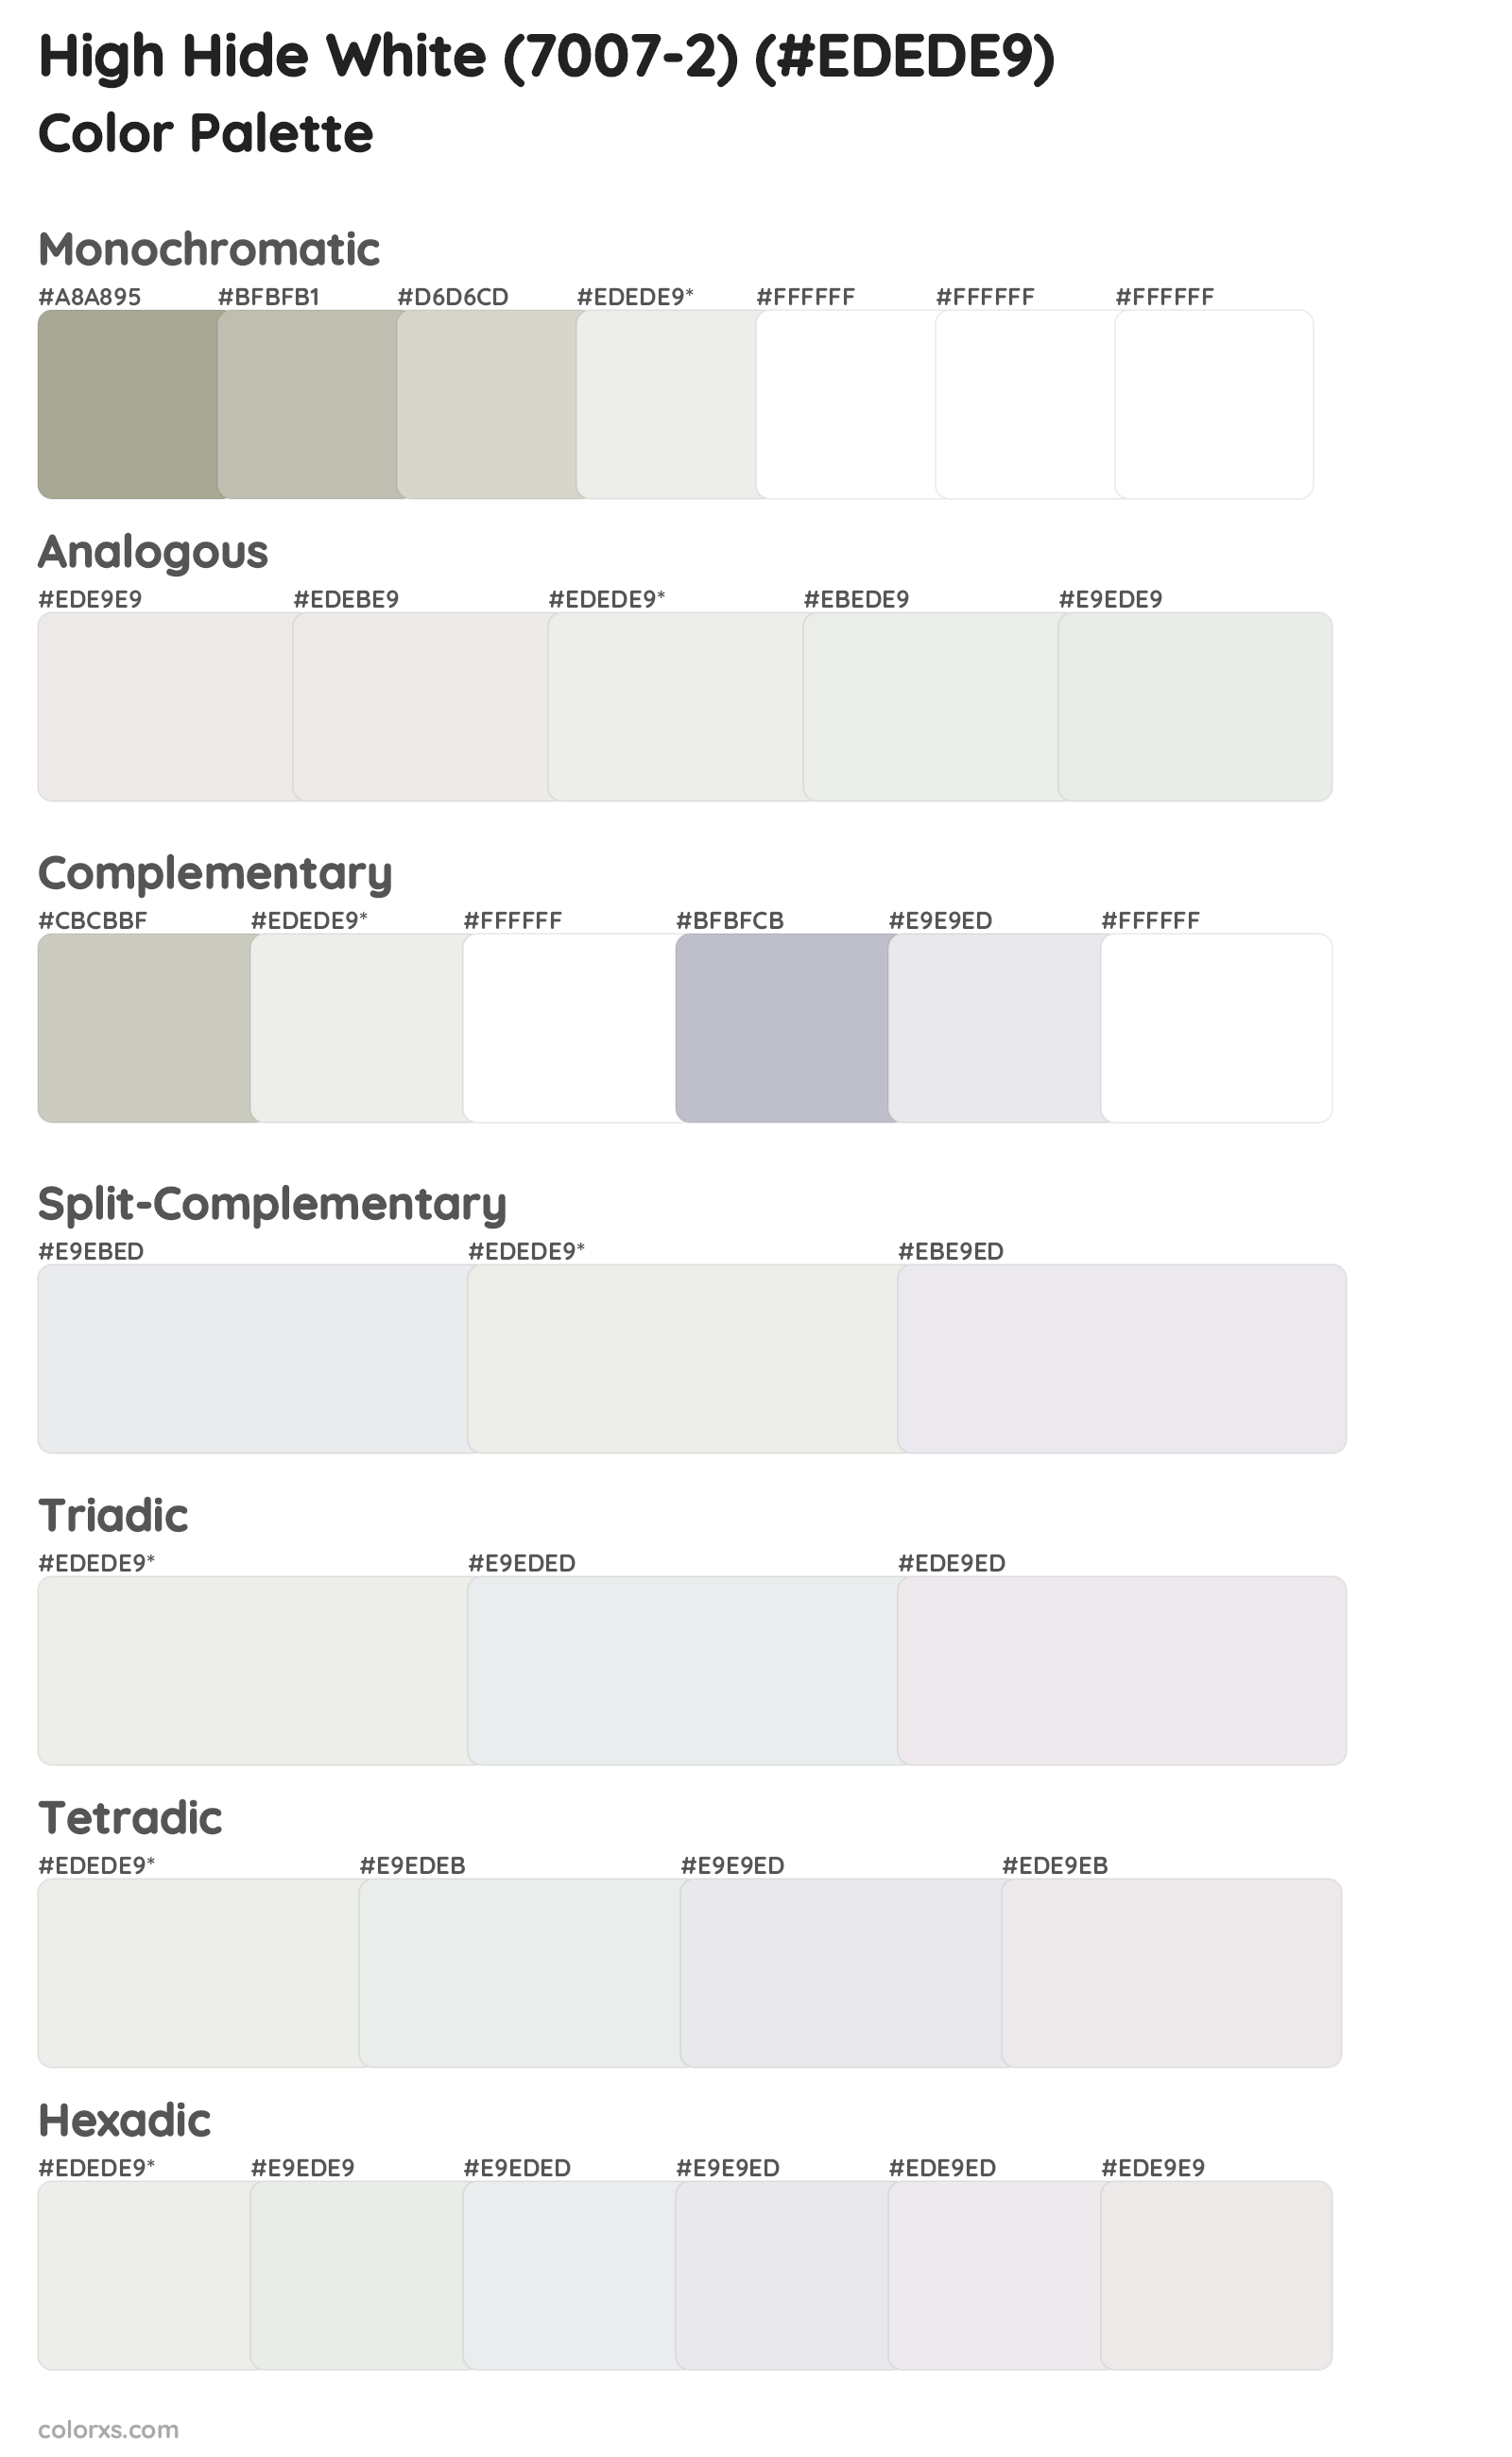 High Hide White (7007-2) Color Scheme Palettes